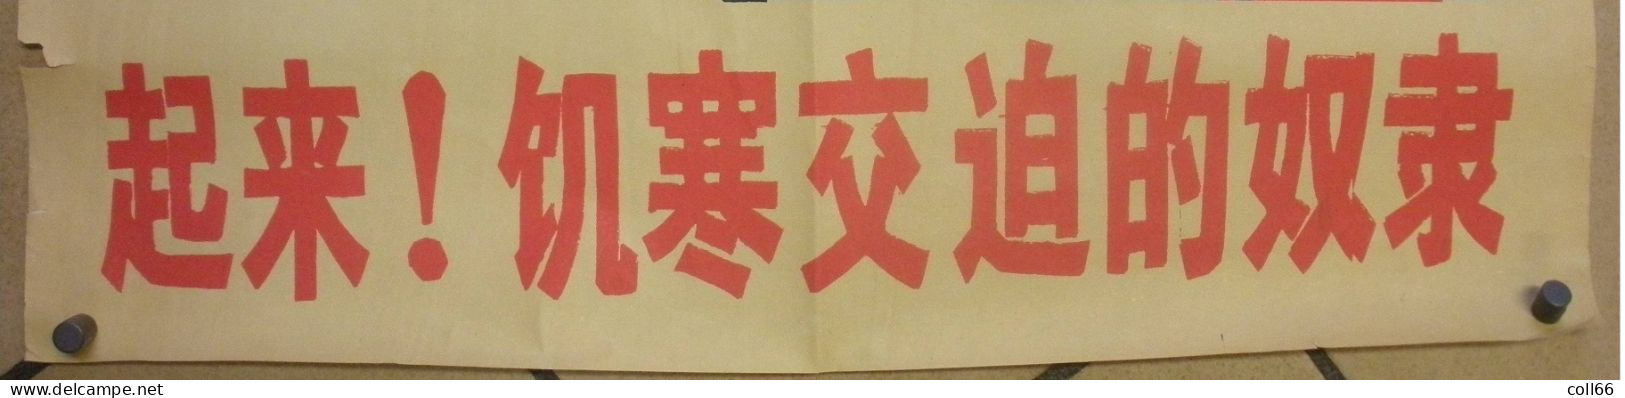 Affiche Propagande Communiste Chine Mao Soldats Rompant Ses Chaines 51x74.5 Cm Port Franco Suivii - Historische Dokumente